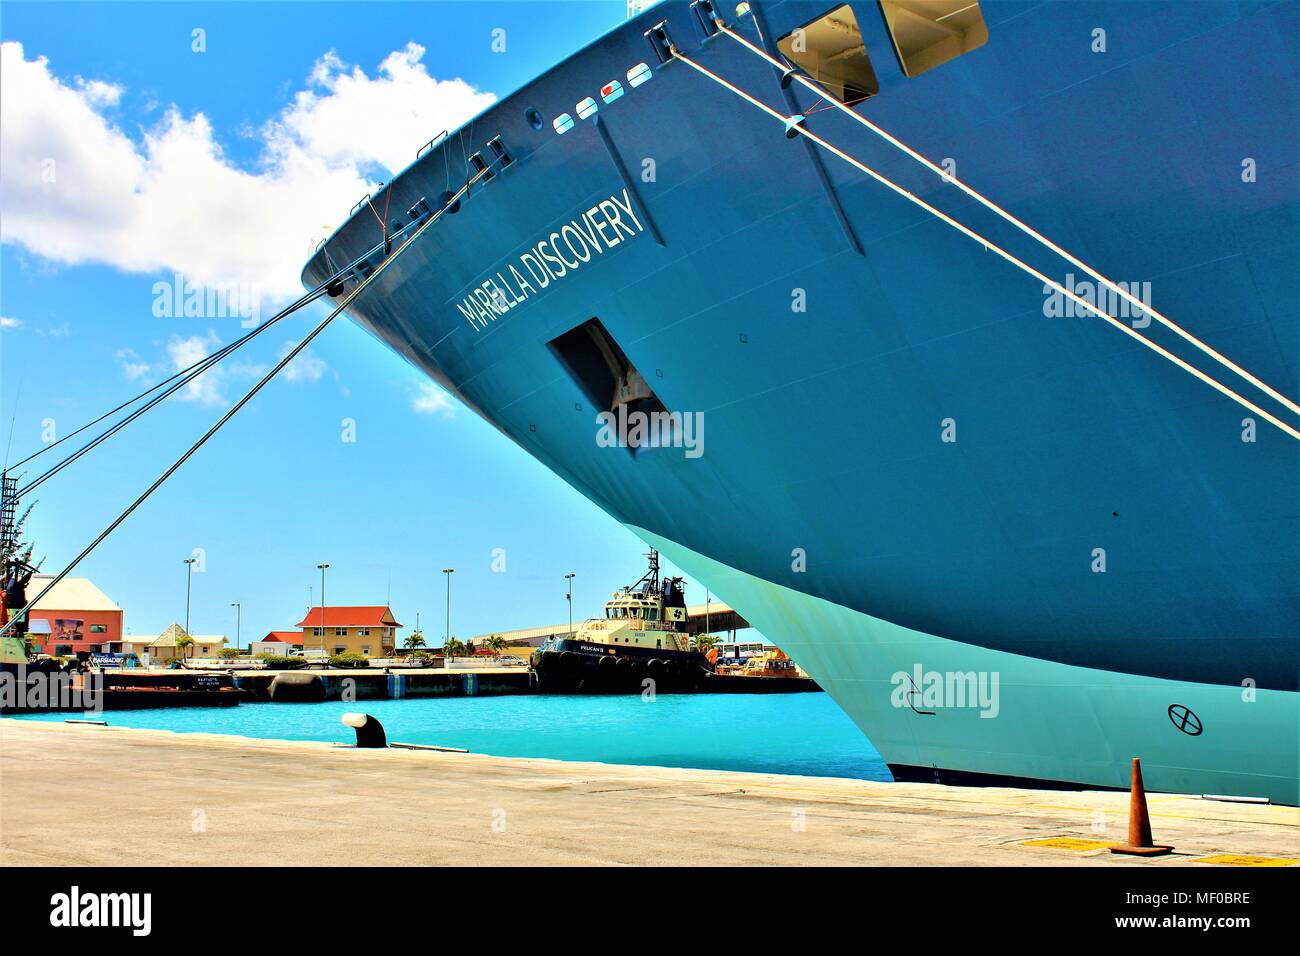 La Marella Discovery (TUI - anciennement Thomson) croisière bateau amarré dans le port de Bridgetown, Barbade, février 2018. Banque D'Images